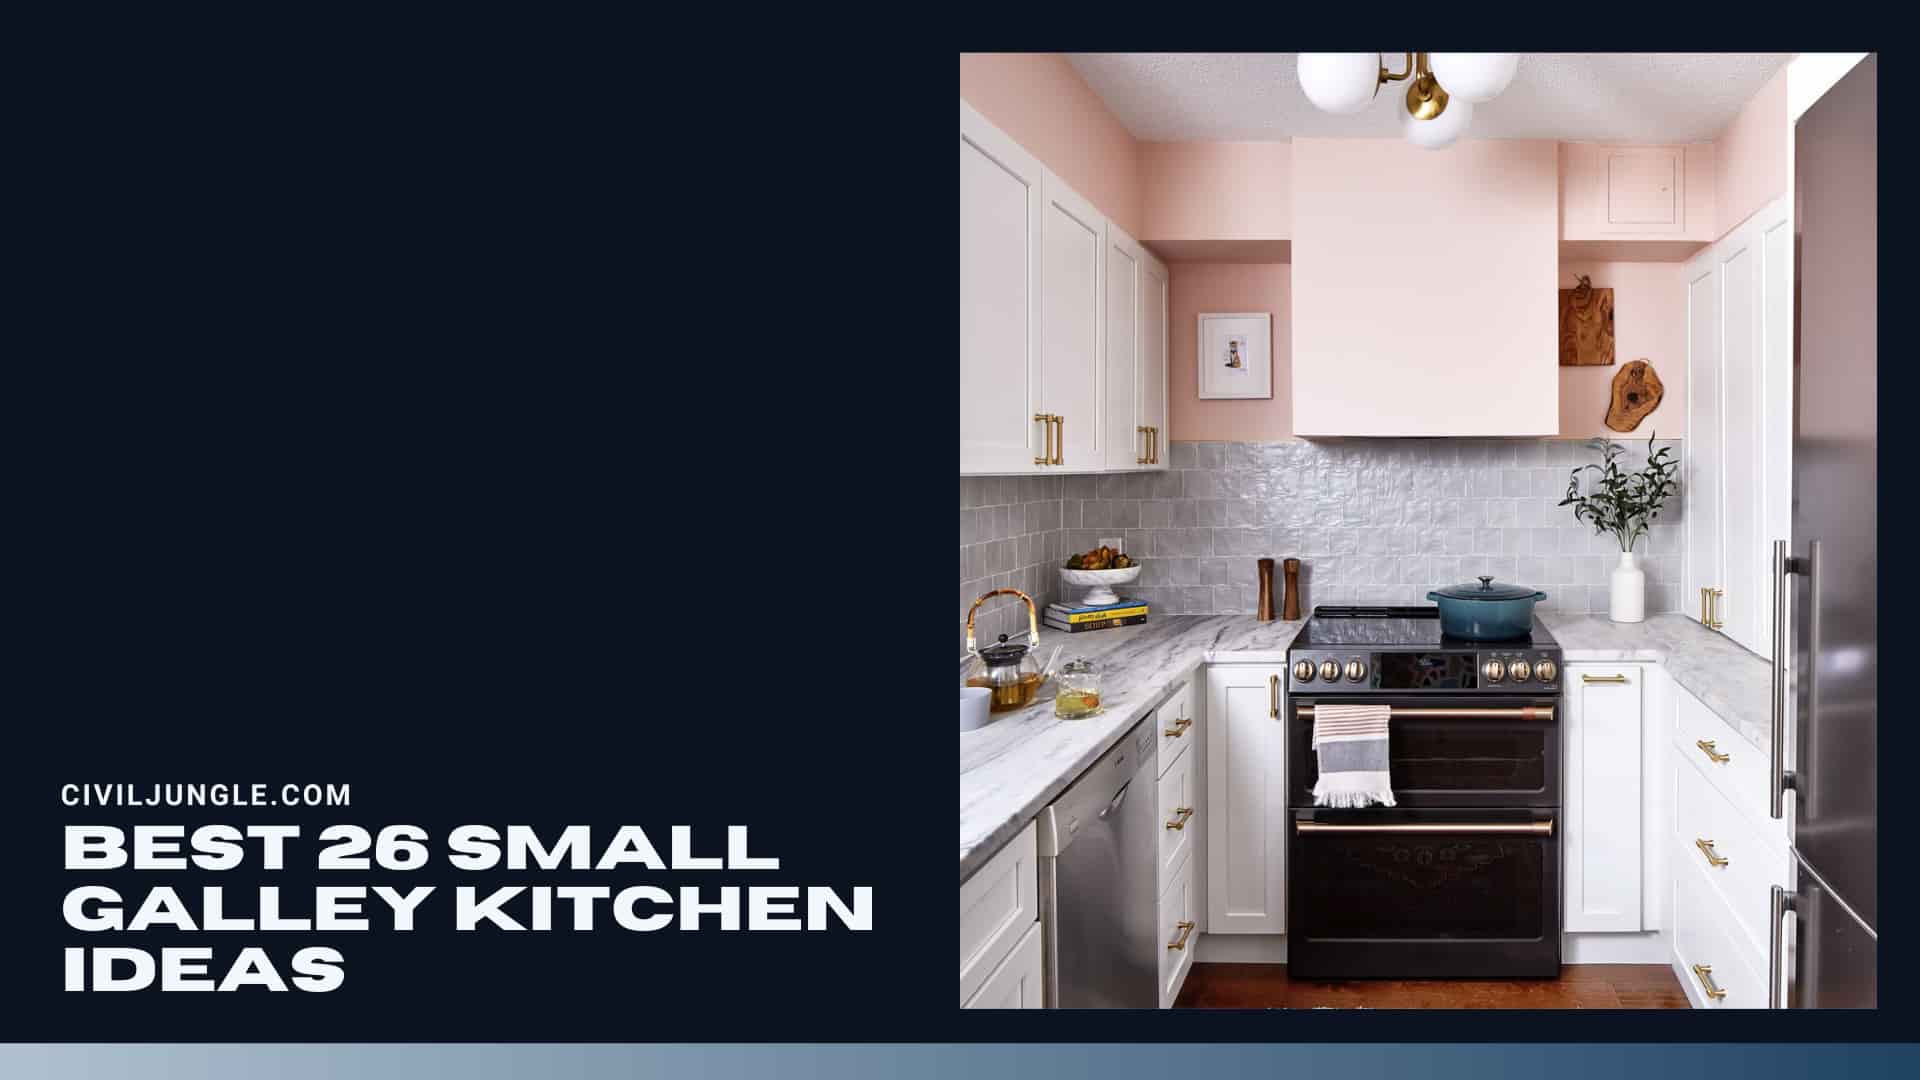 Best 26 Small Galley Kitchen Ideas